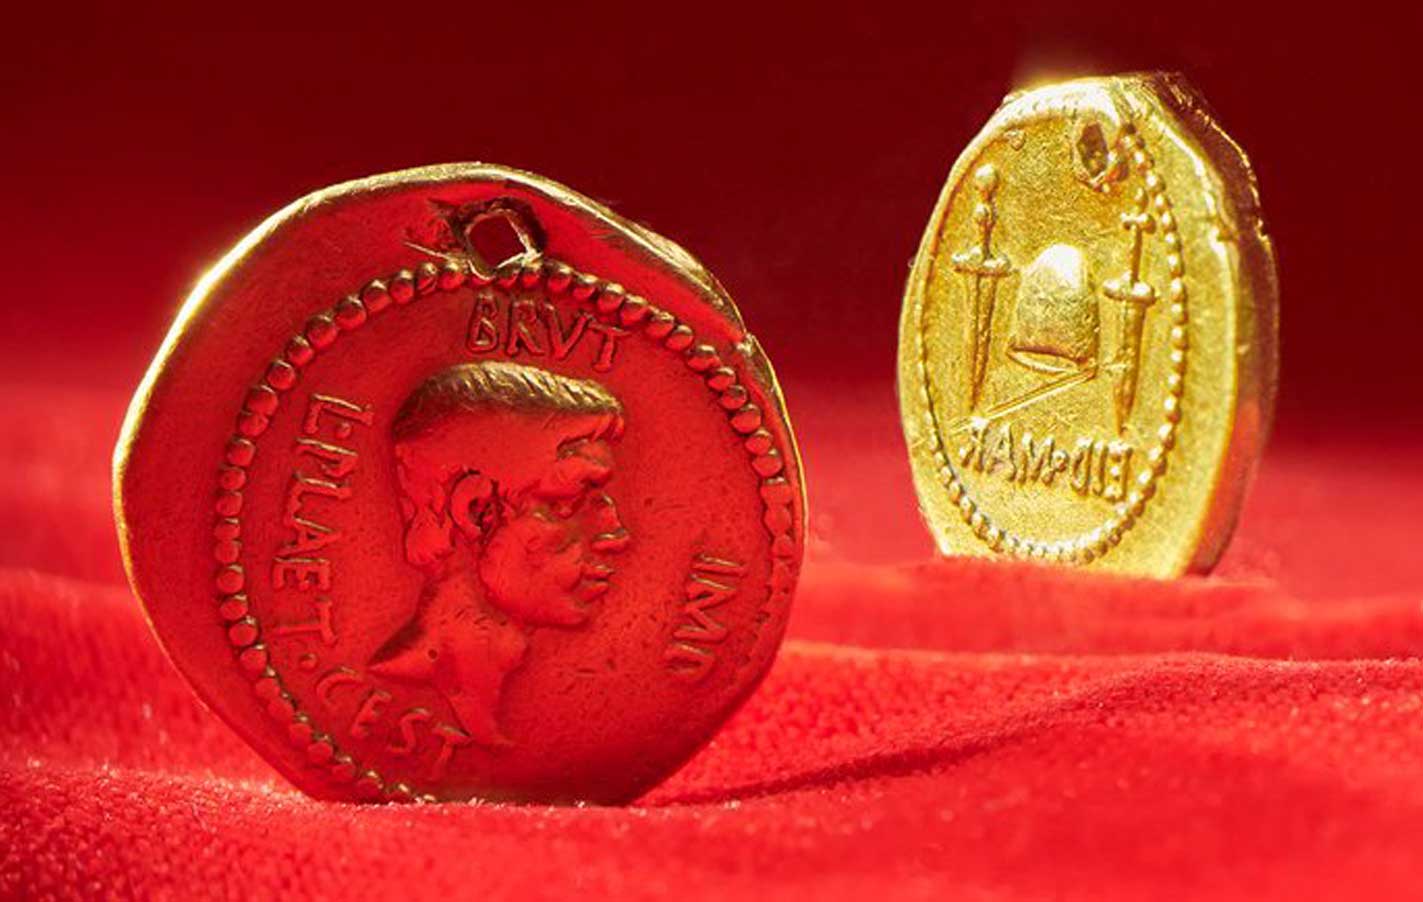 Монета Ид Мар или Мартовские иды с изображением Брута